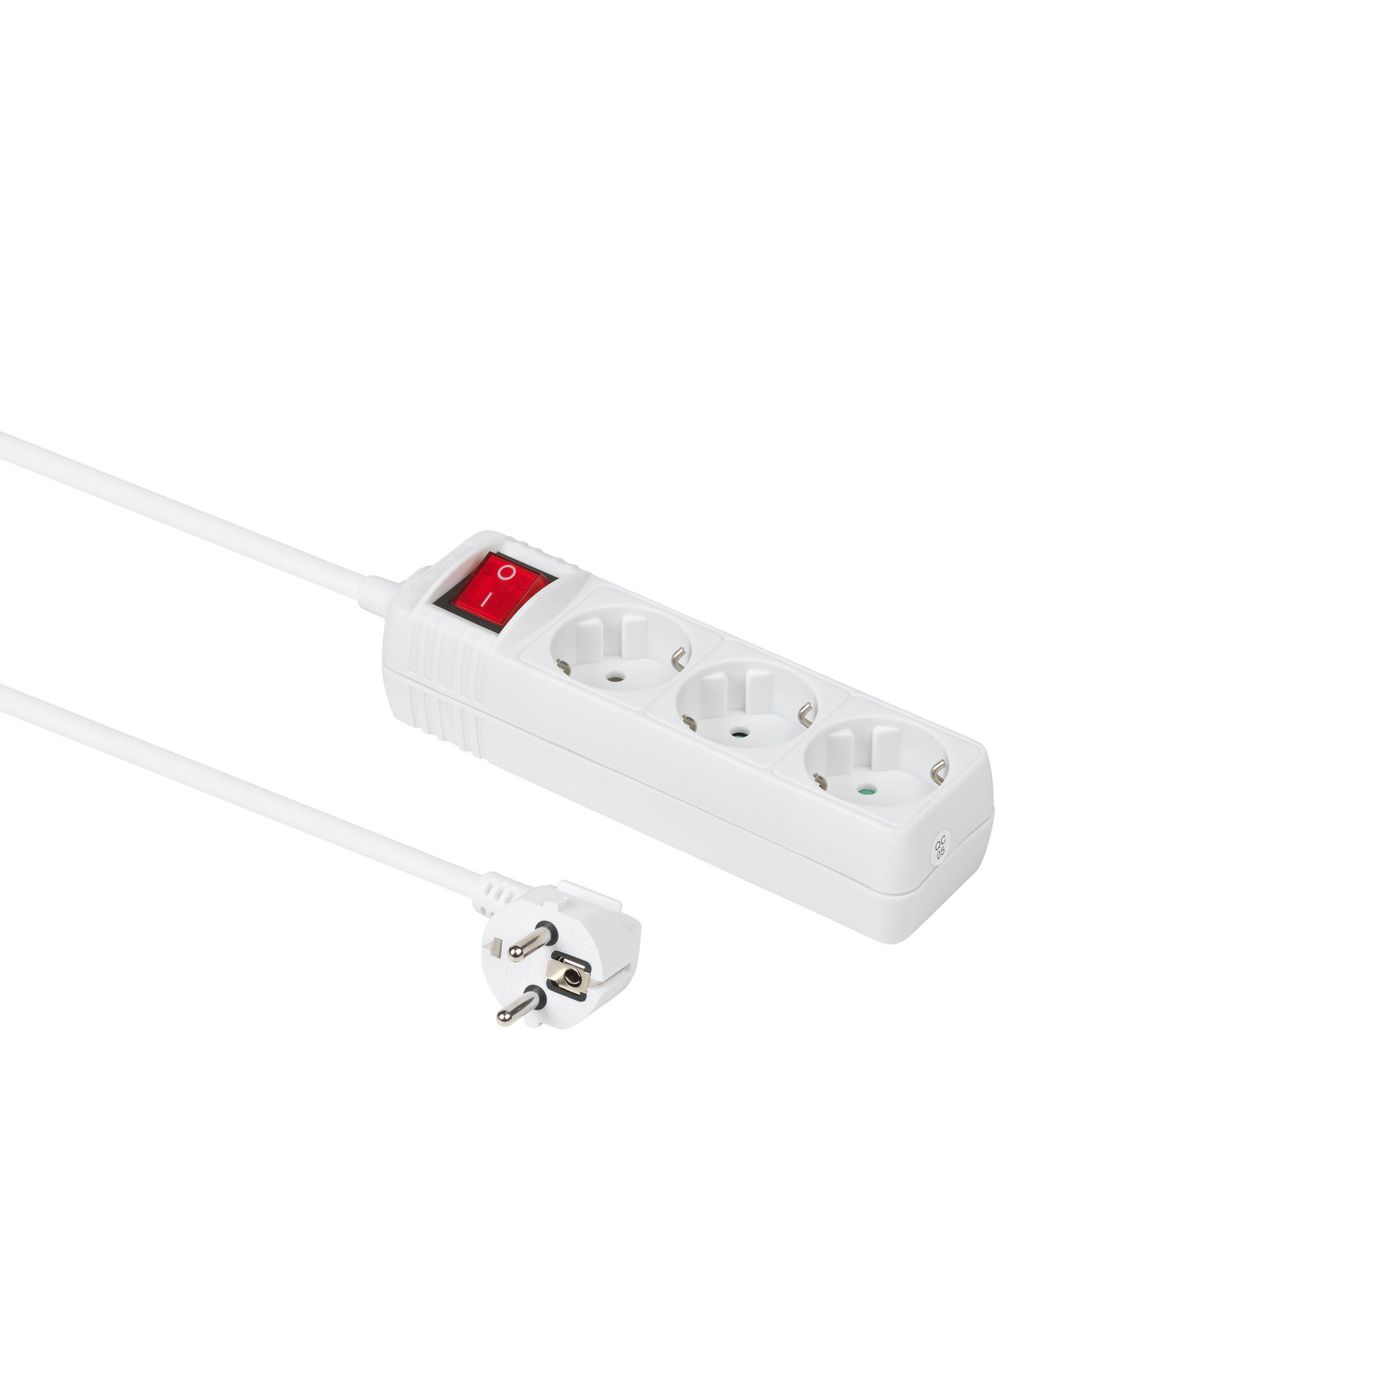 Schuko Power Socket - 3-way - 3m - White With Illuminated Switch